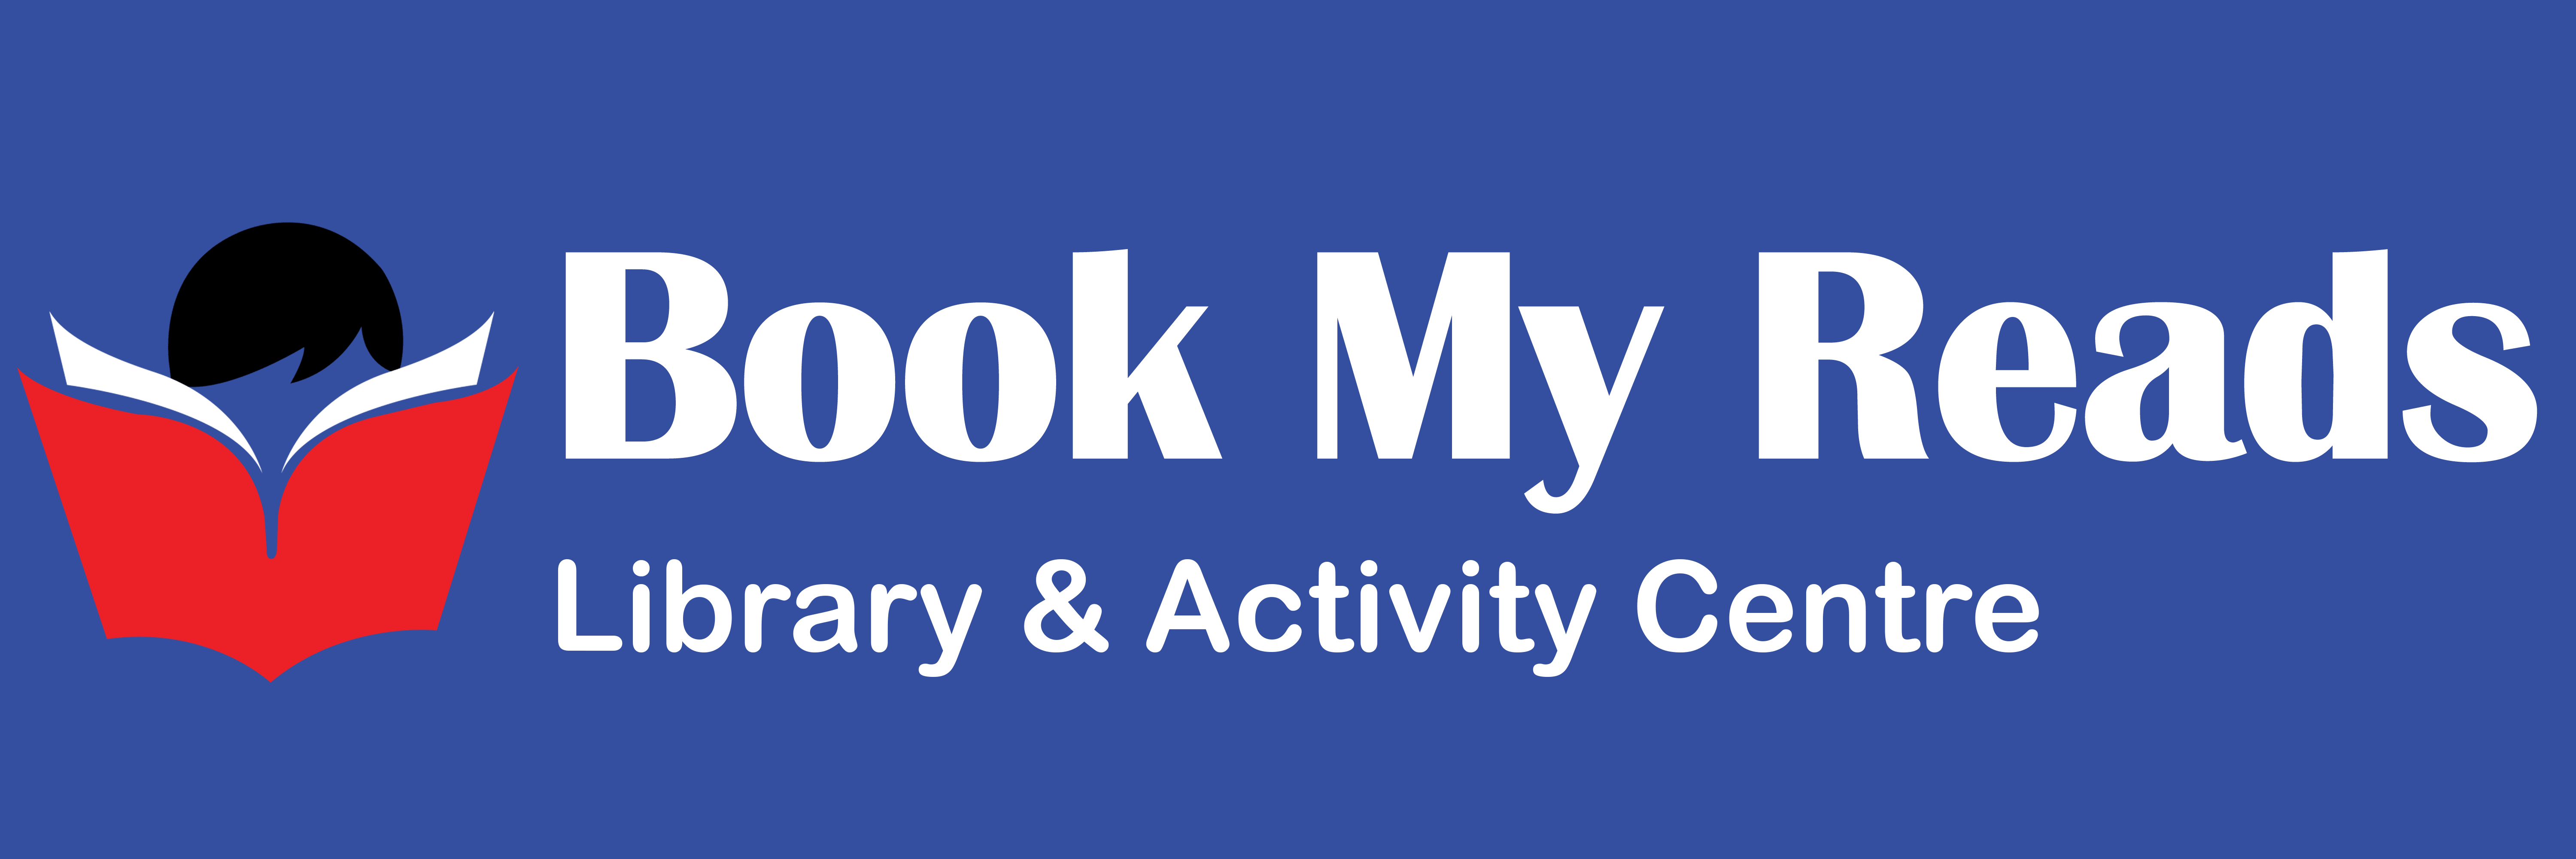 bookmyreads.com